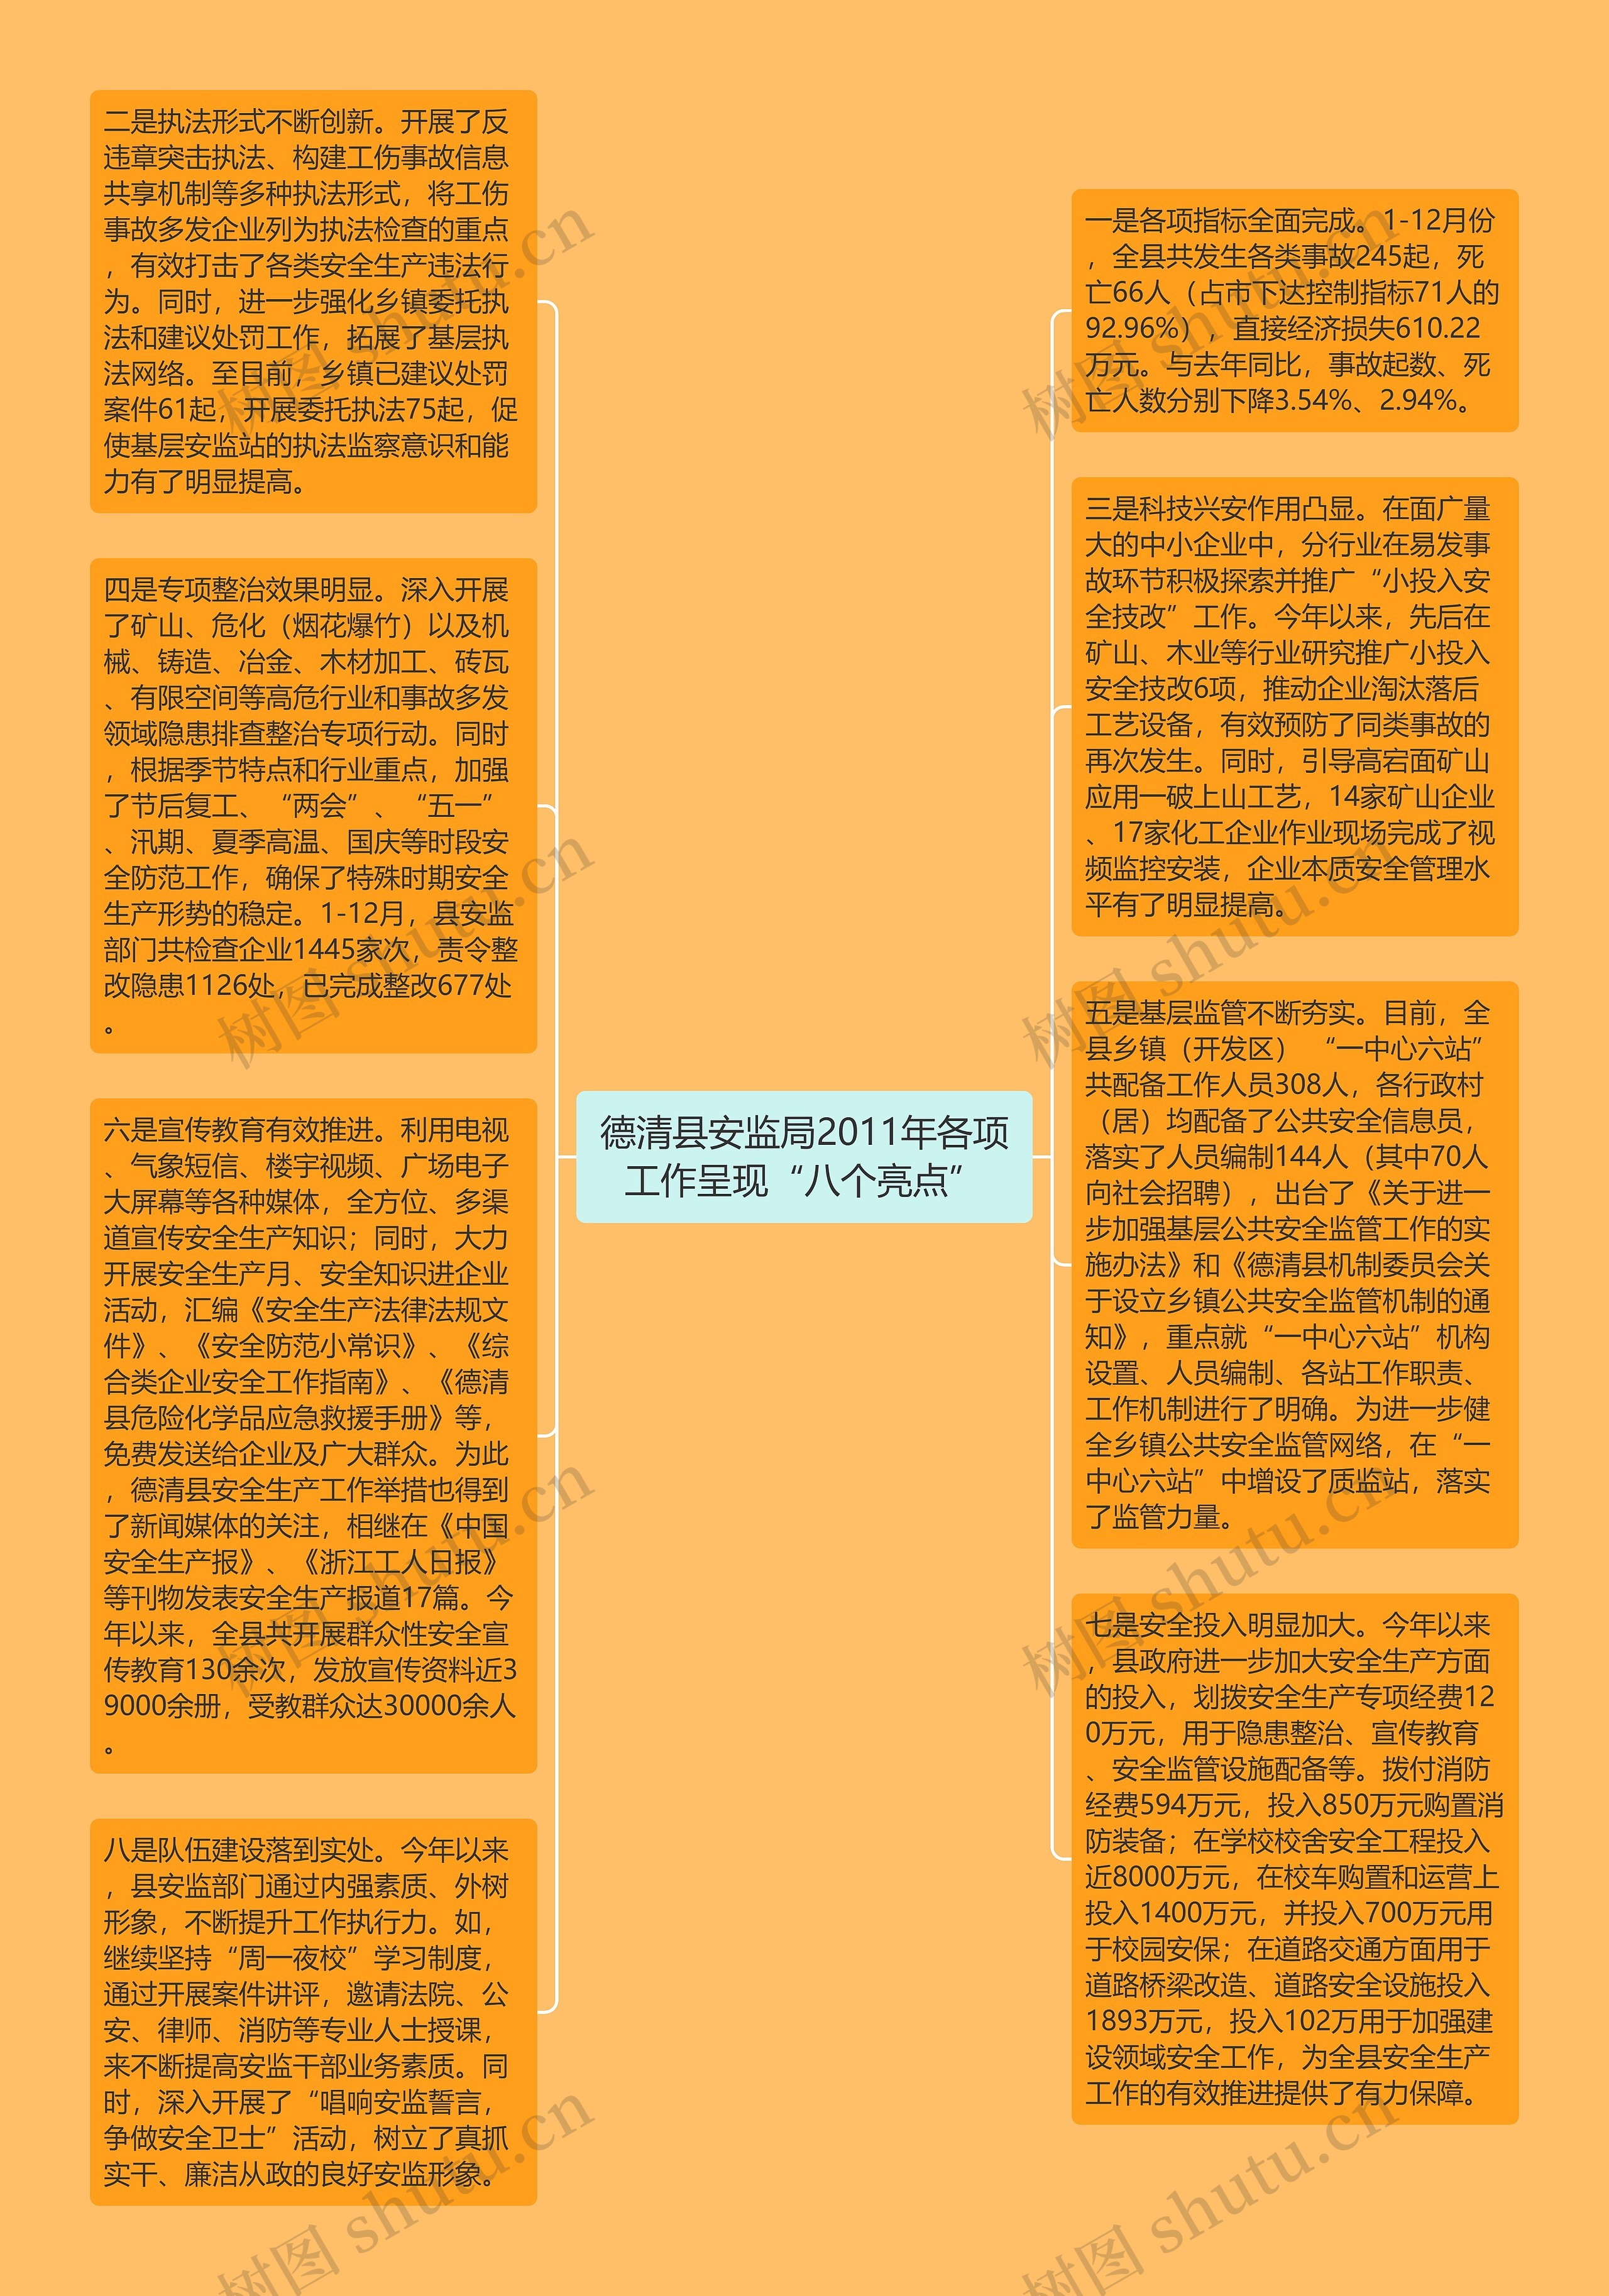 德清县安监局2011年各项工作呈现“八个亮点”思维导图